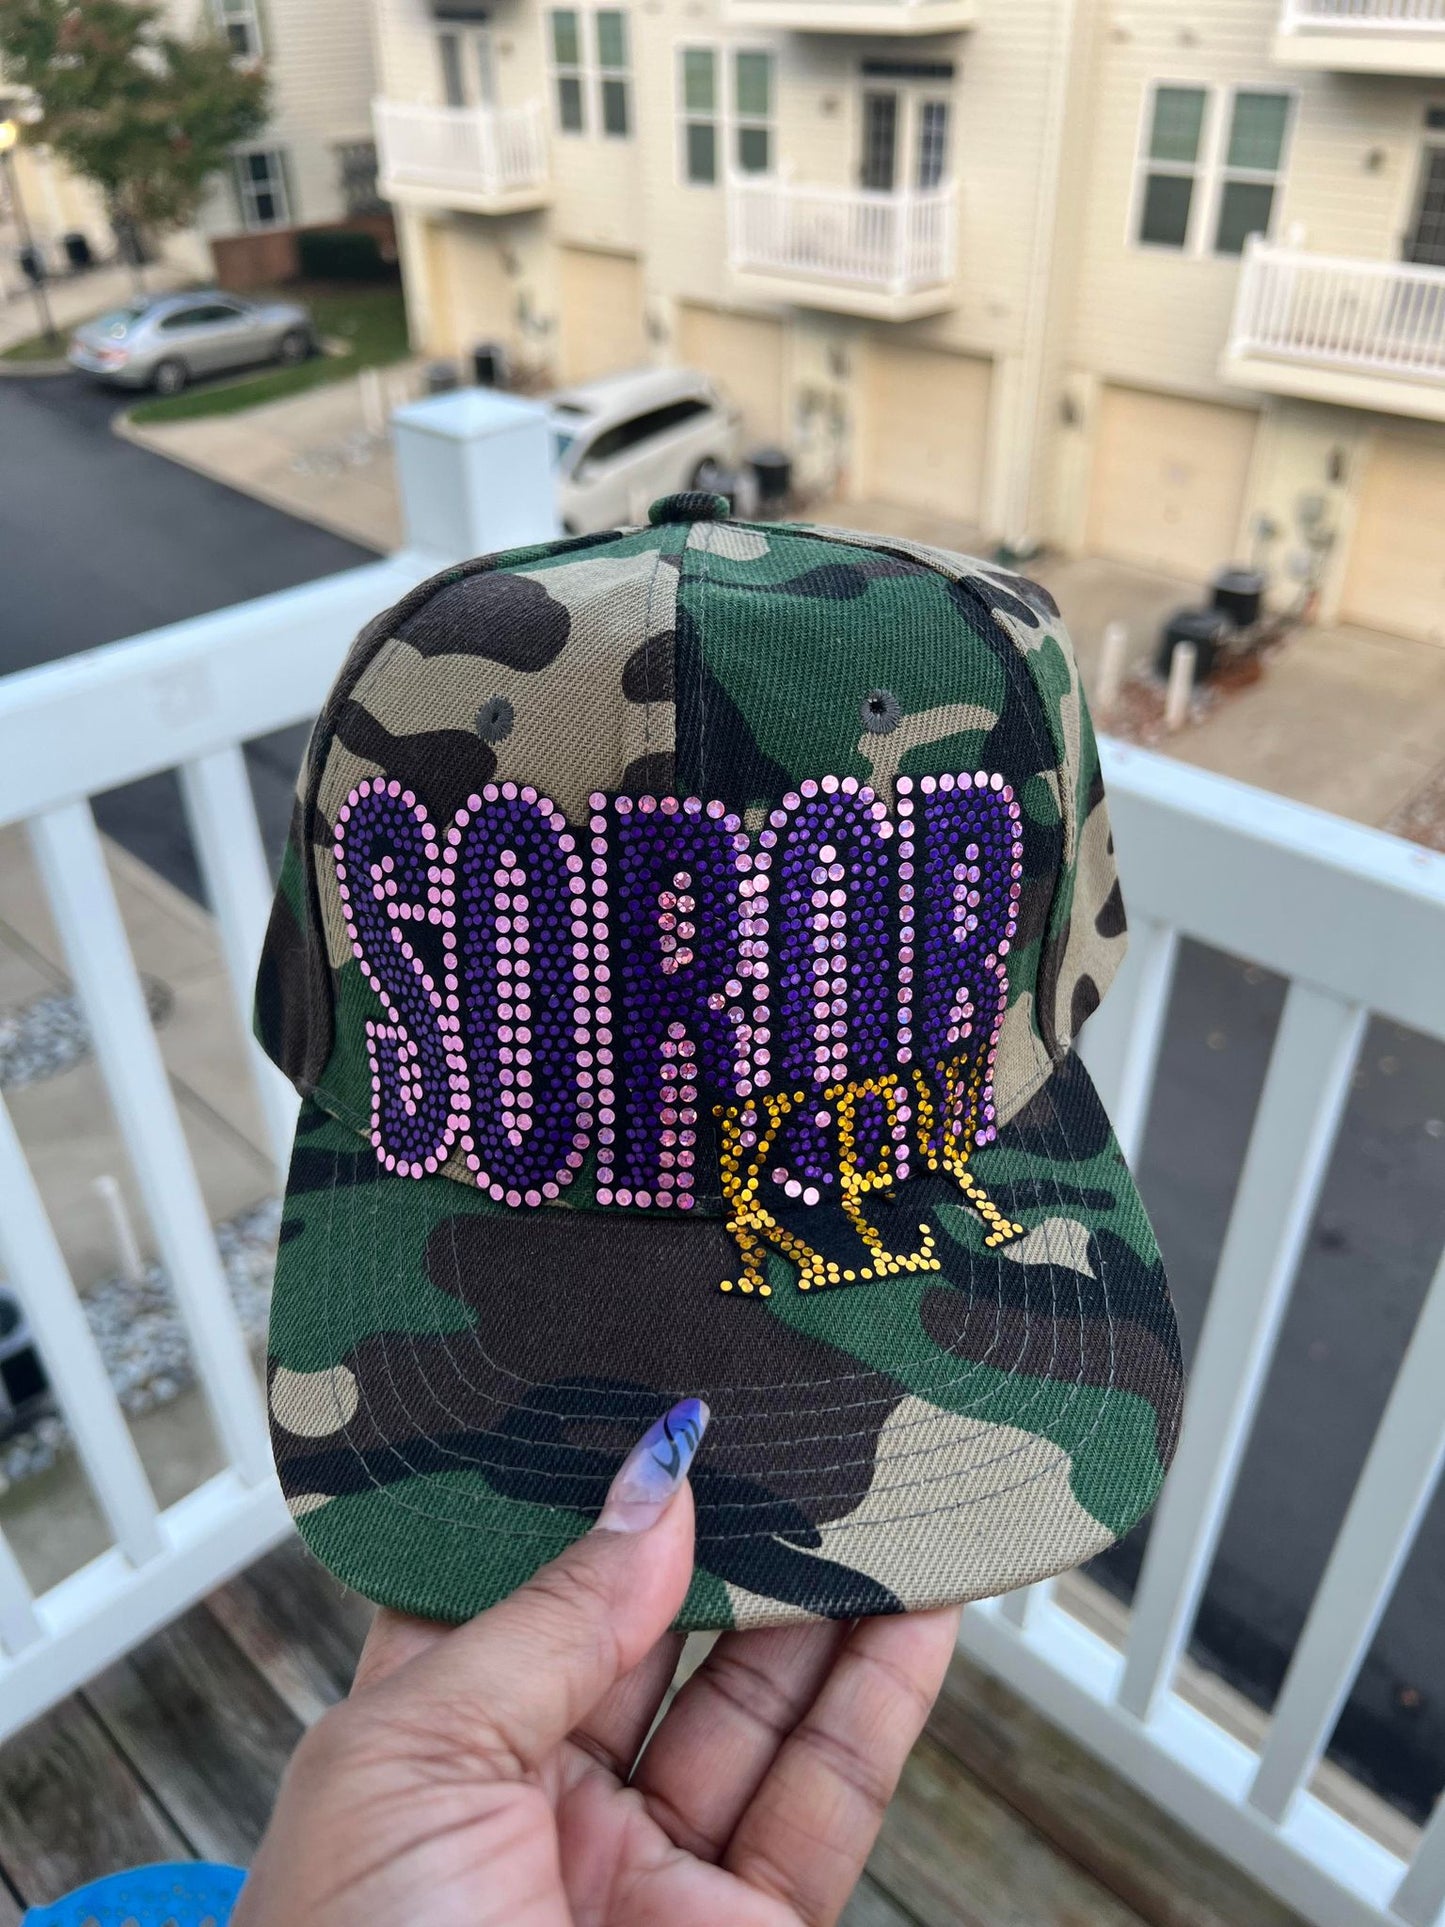 Camo Print Hat  ~  "SOROR" Greek Sororities